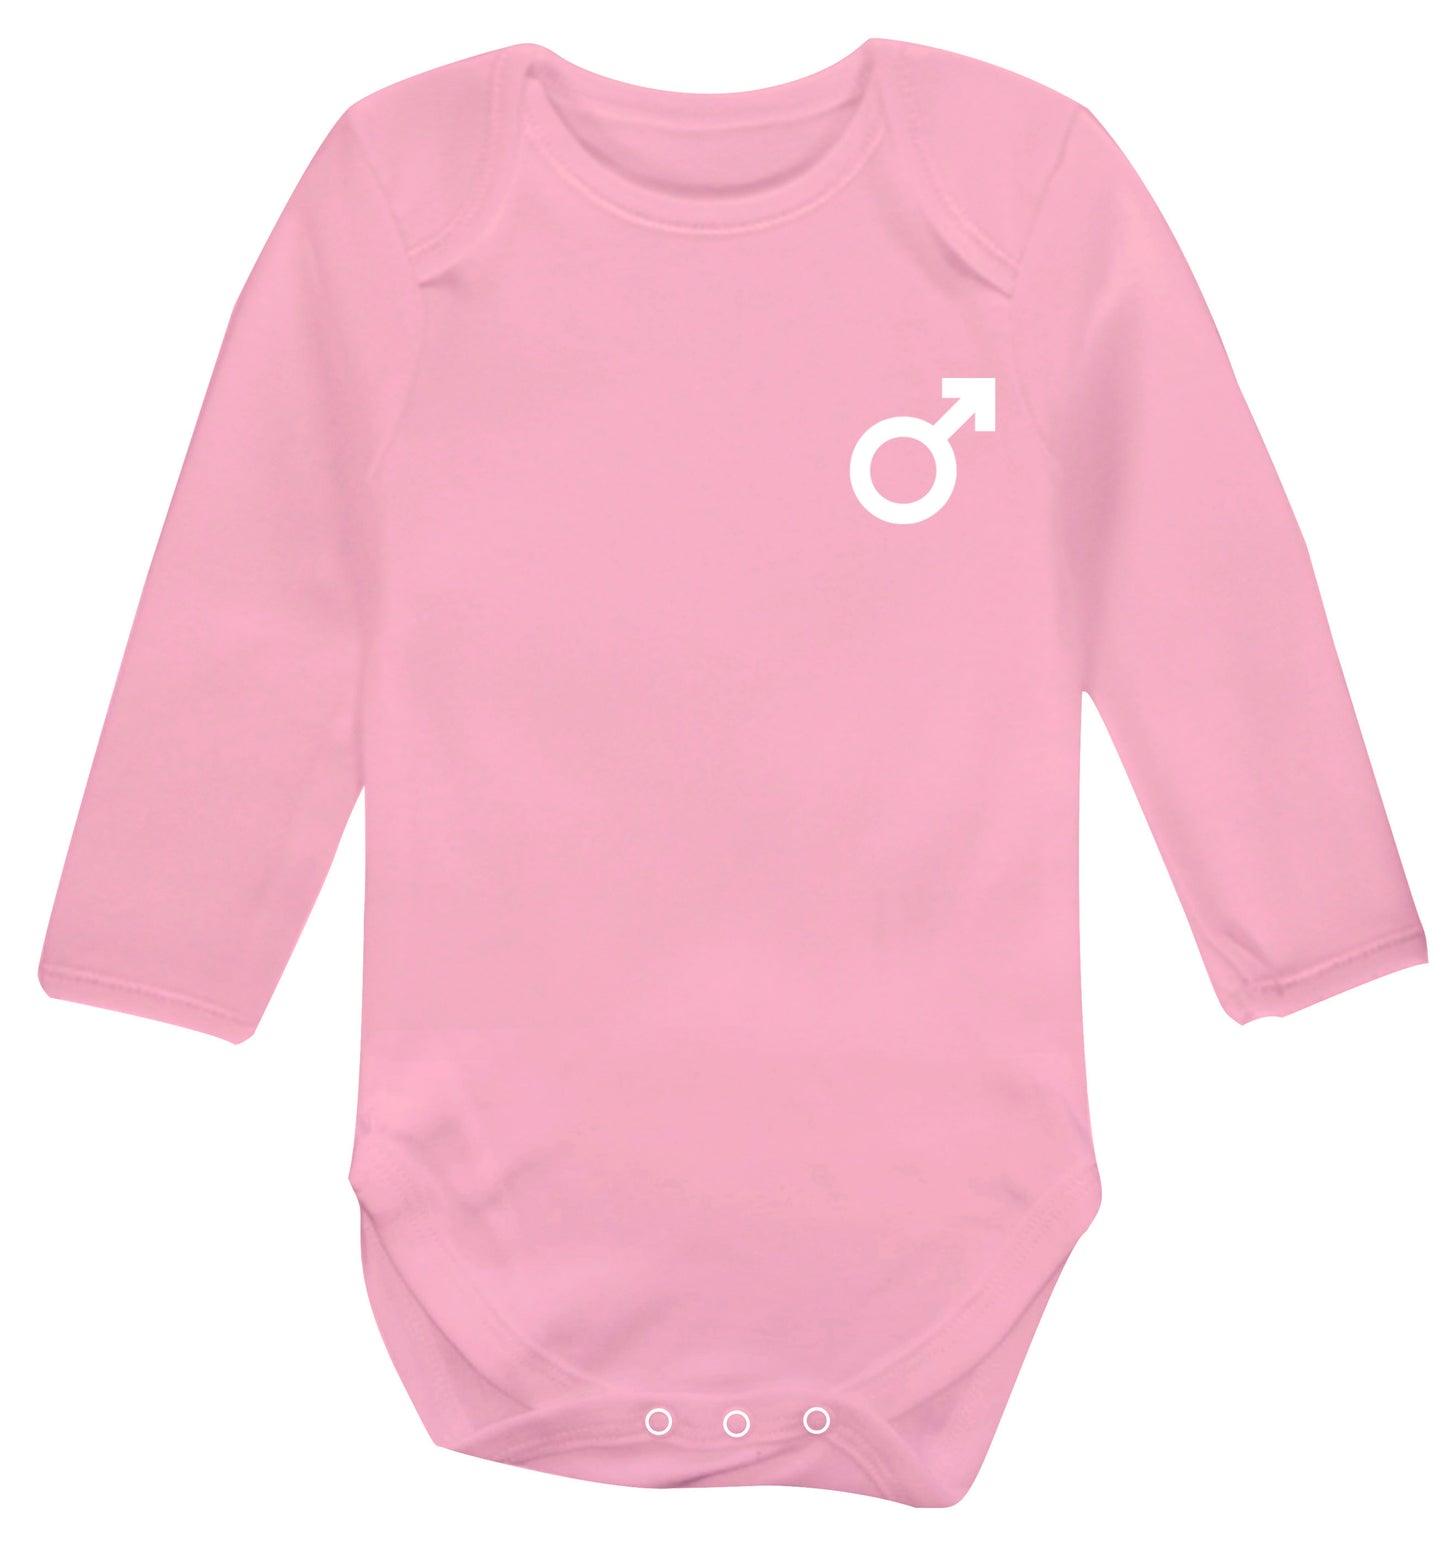 Male symbol pocket Baby Vest long sleeved pale pink 6-12 months